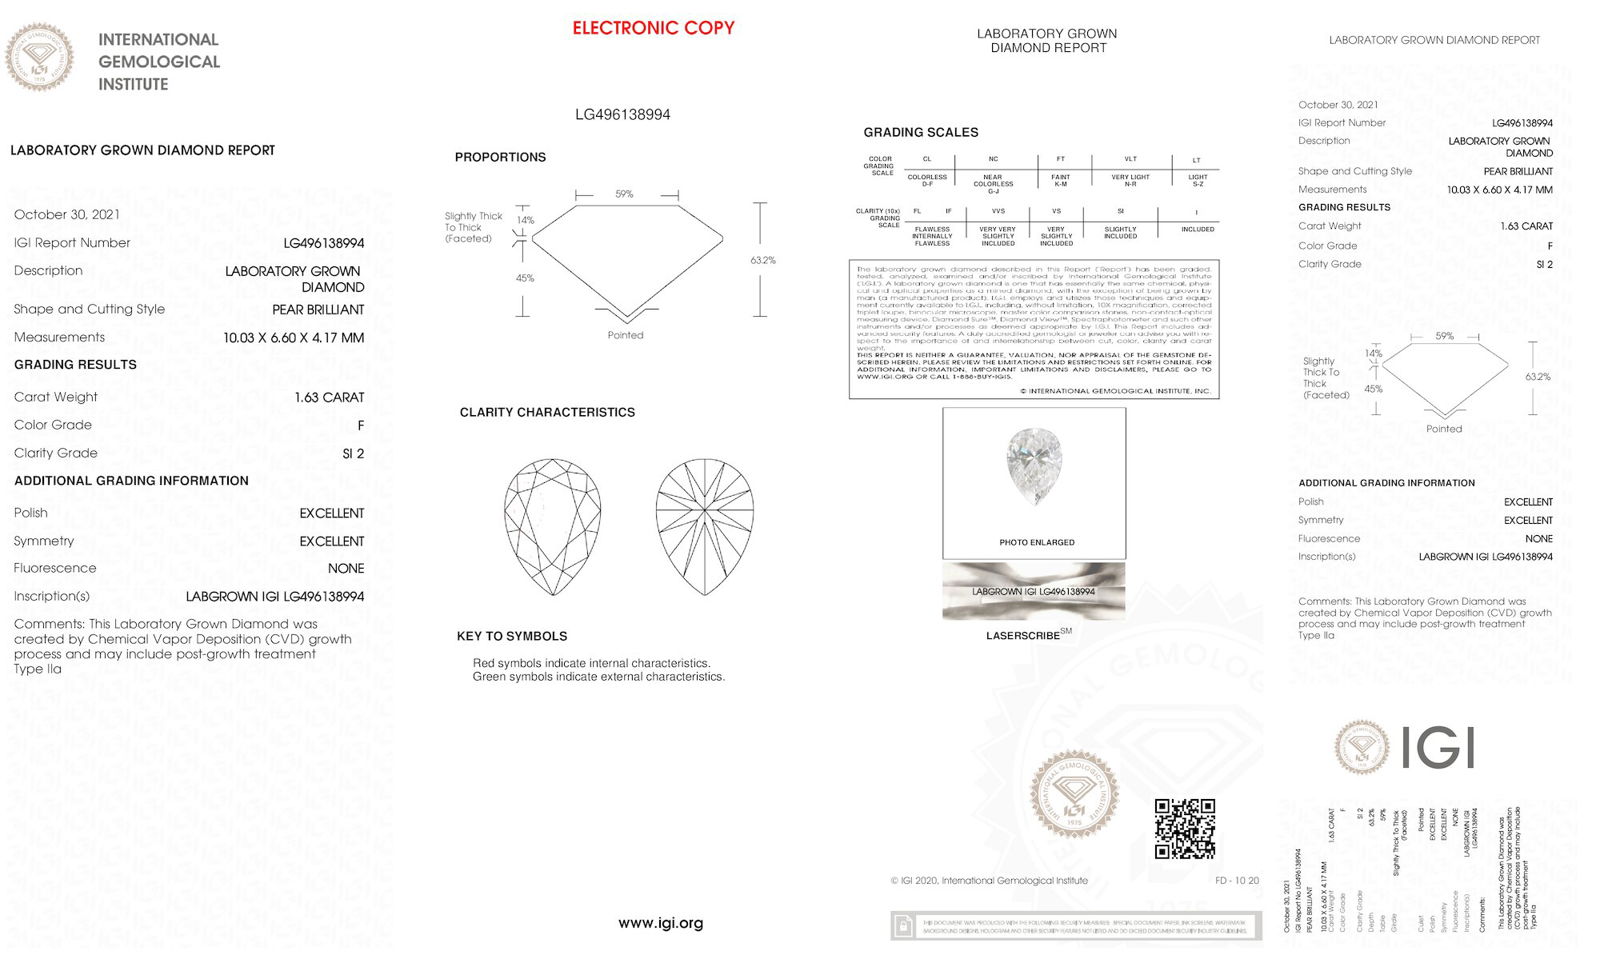 Certificate of diamond 1.63 Carat Pear Diamond